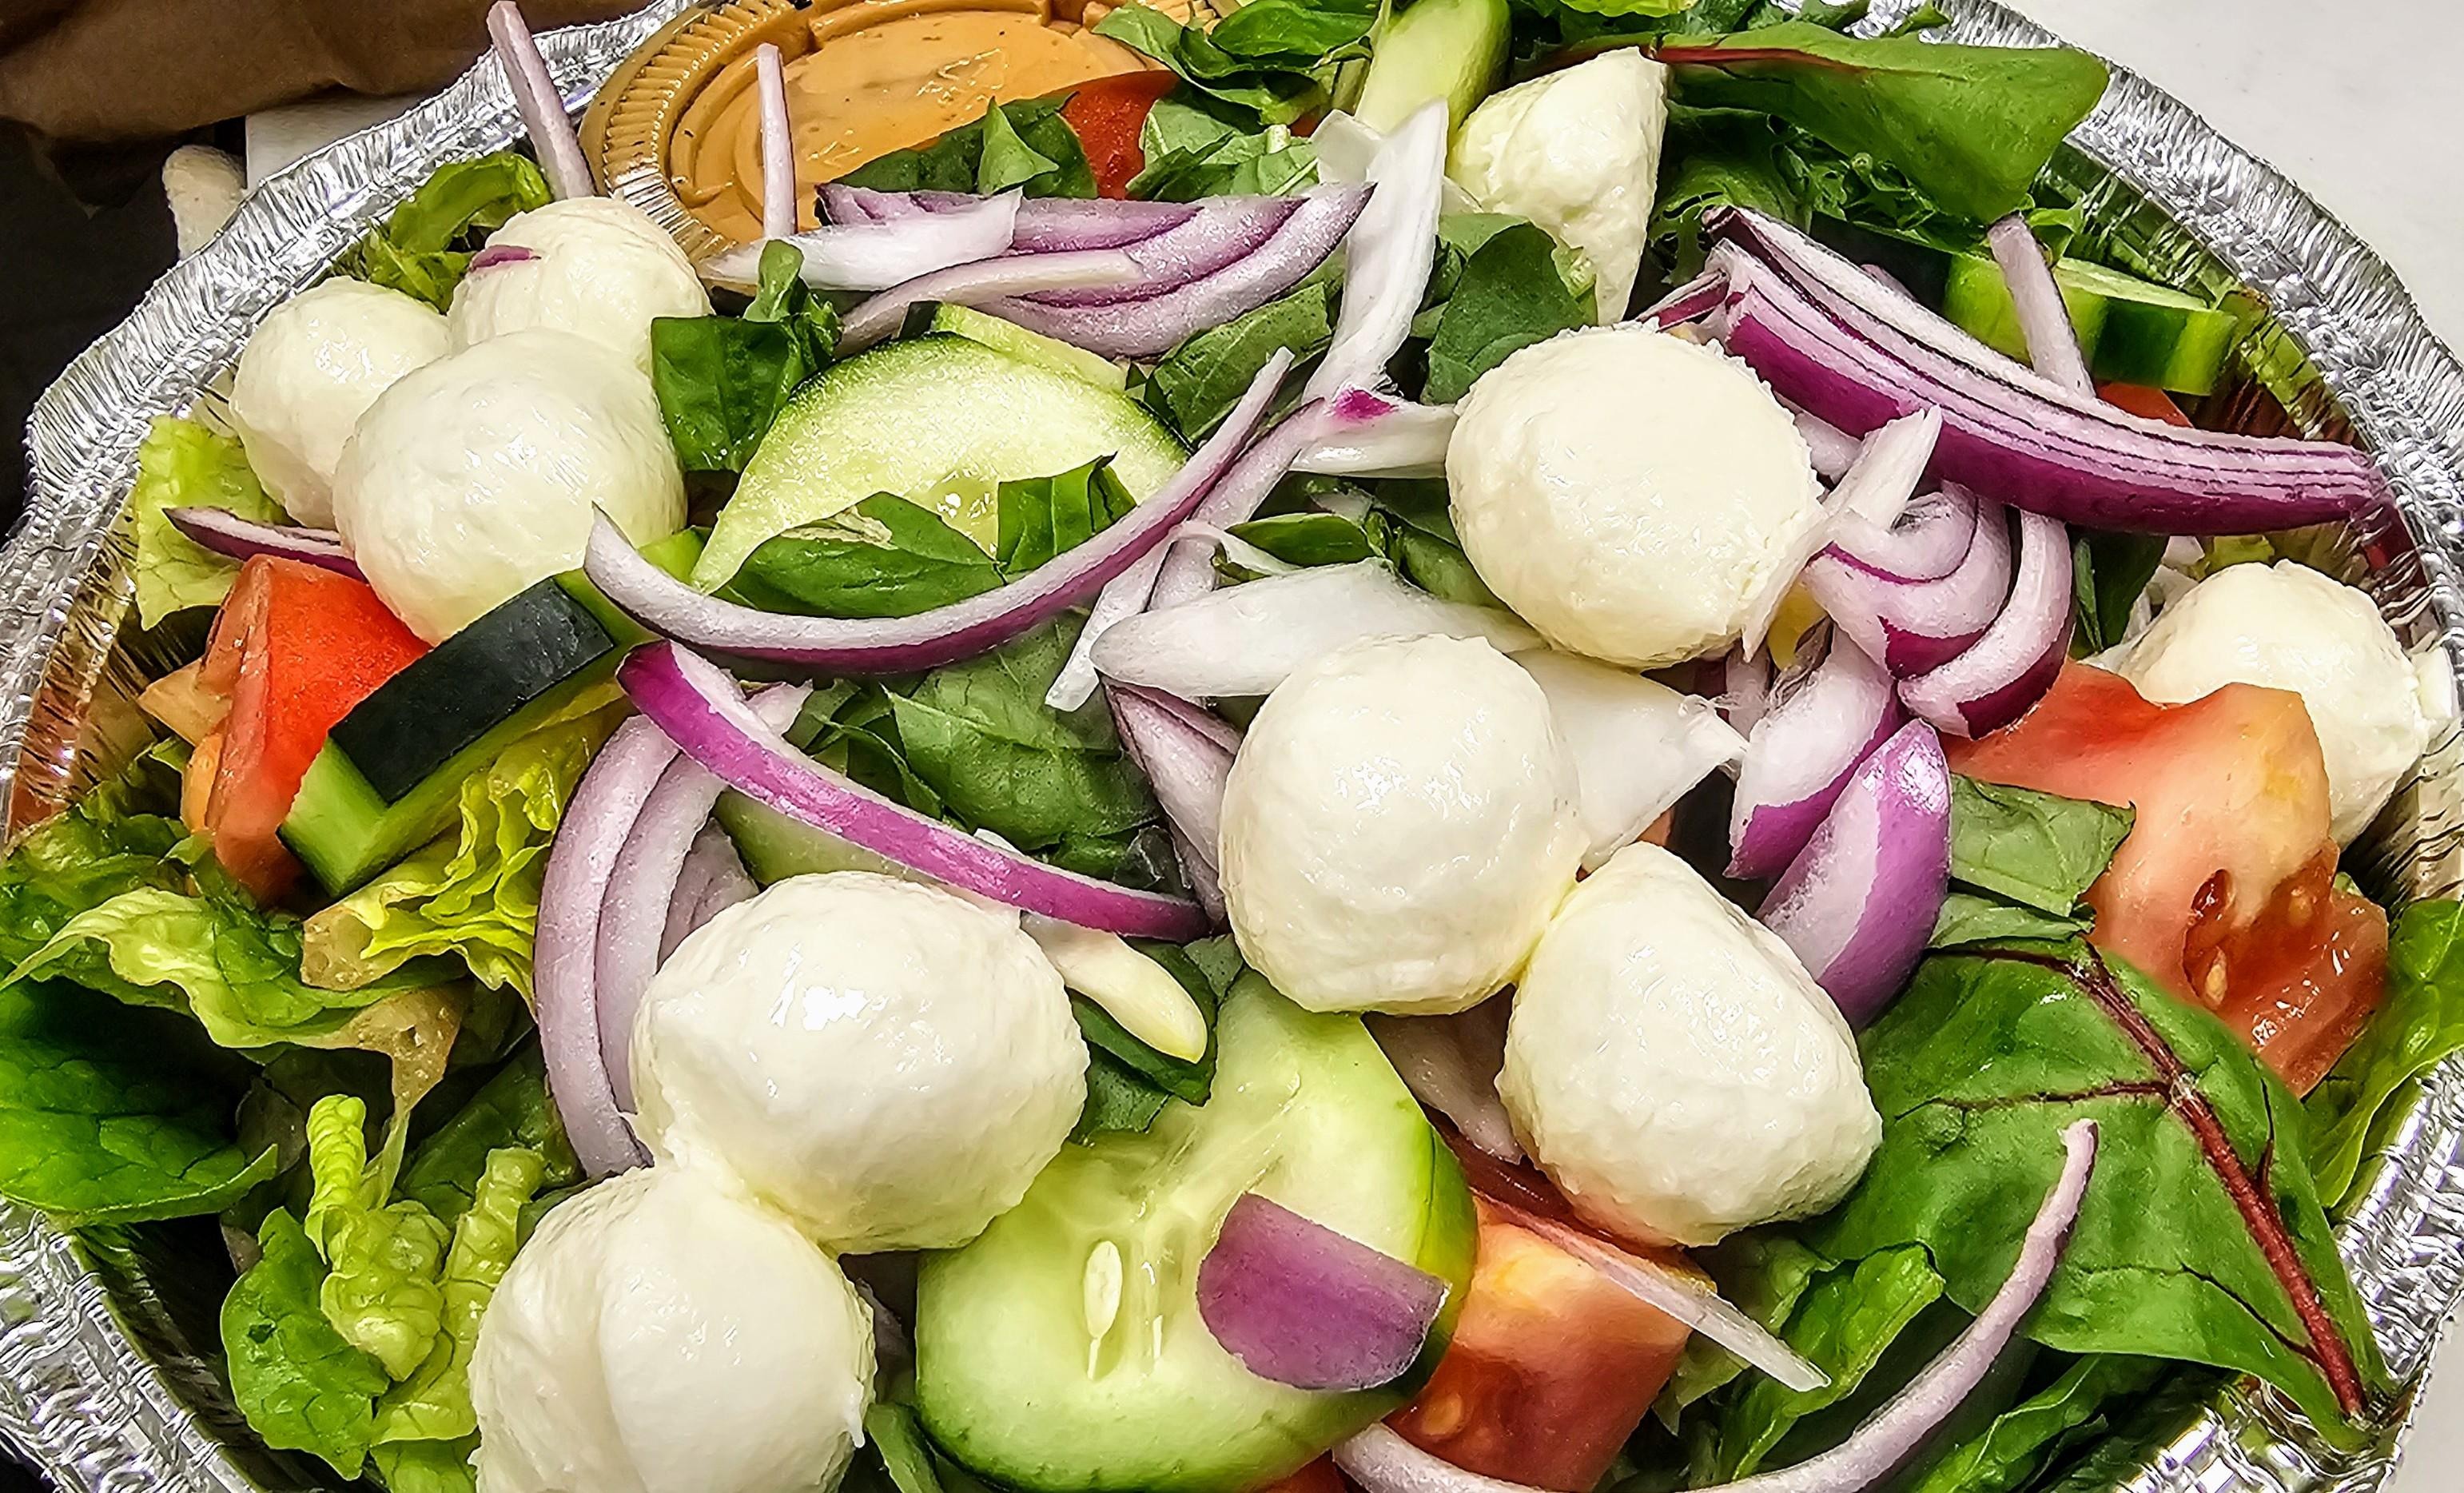 Bocconcini Salad